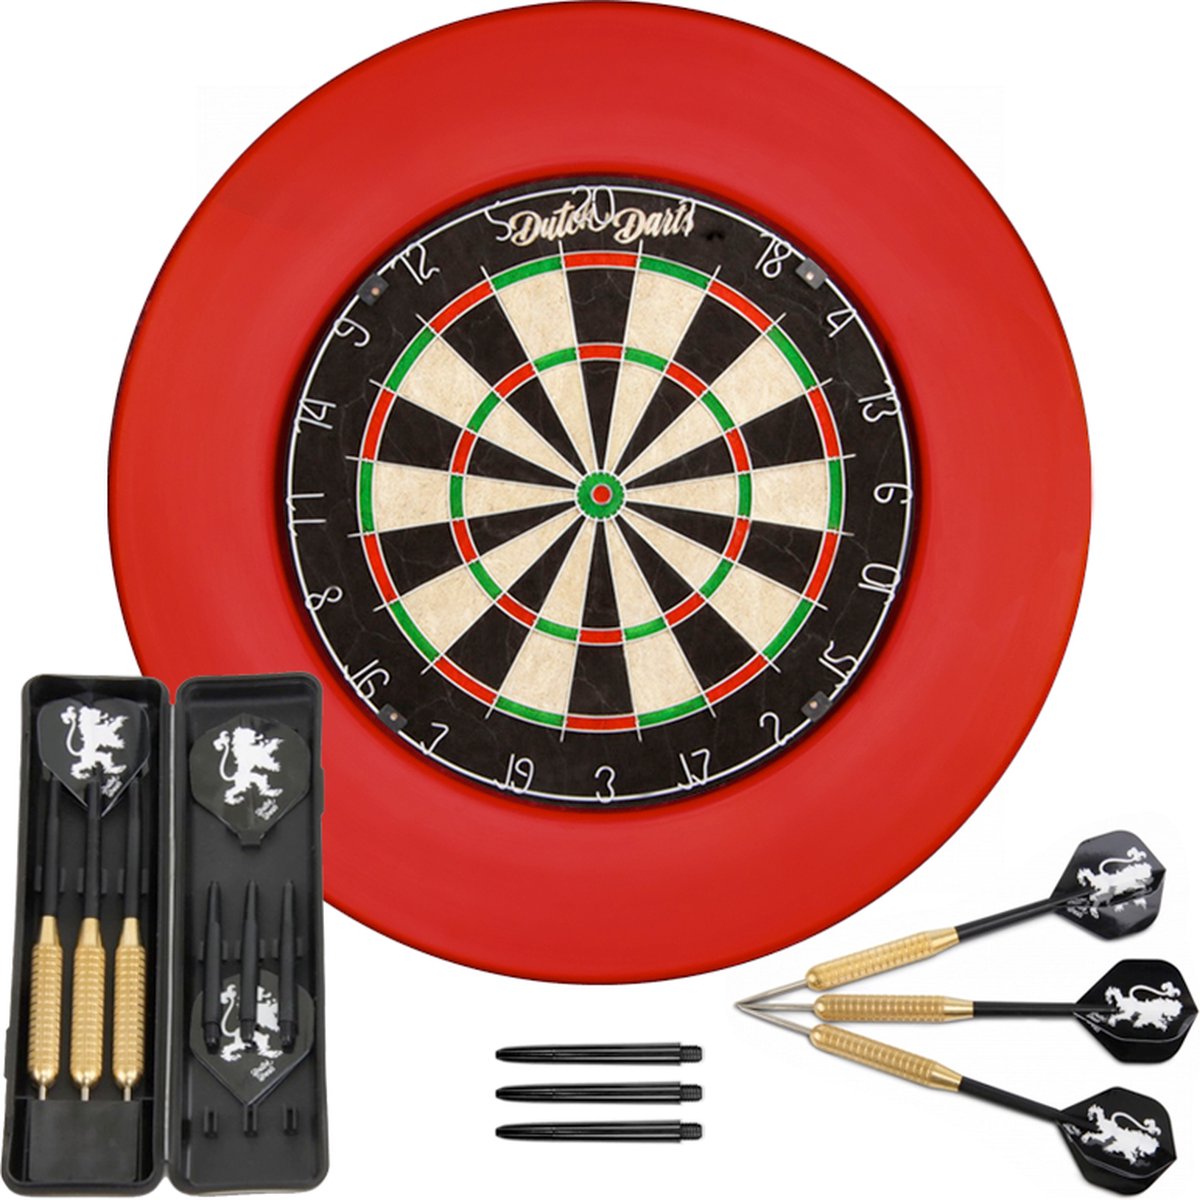 Dutch Darts Dartset met roundwire dartbord, rode surround en een setje dartpijlen